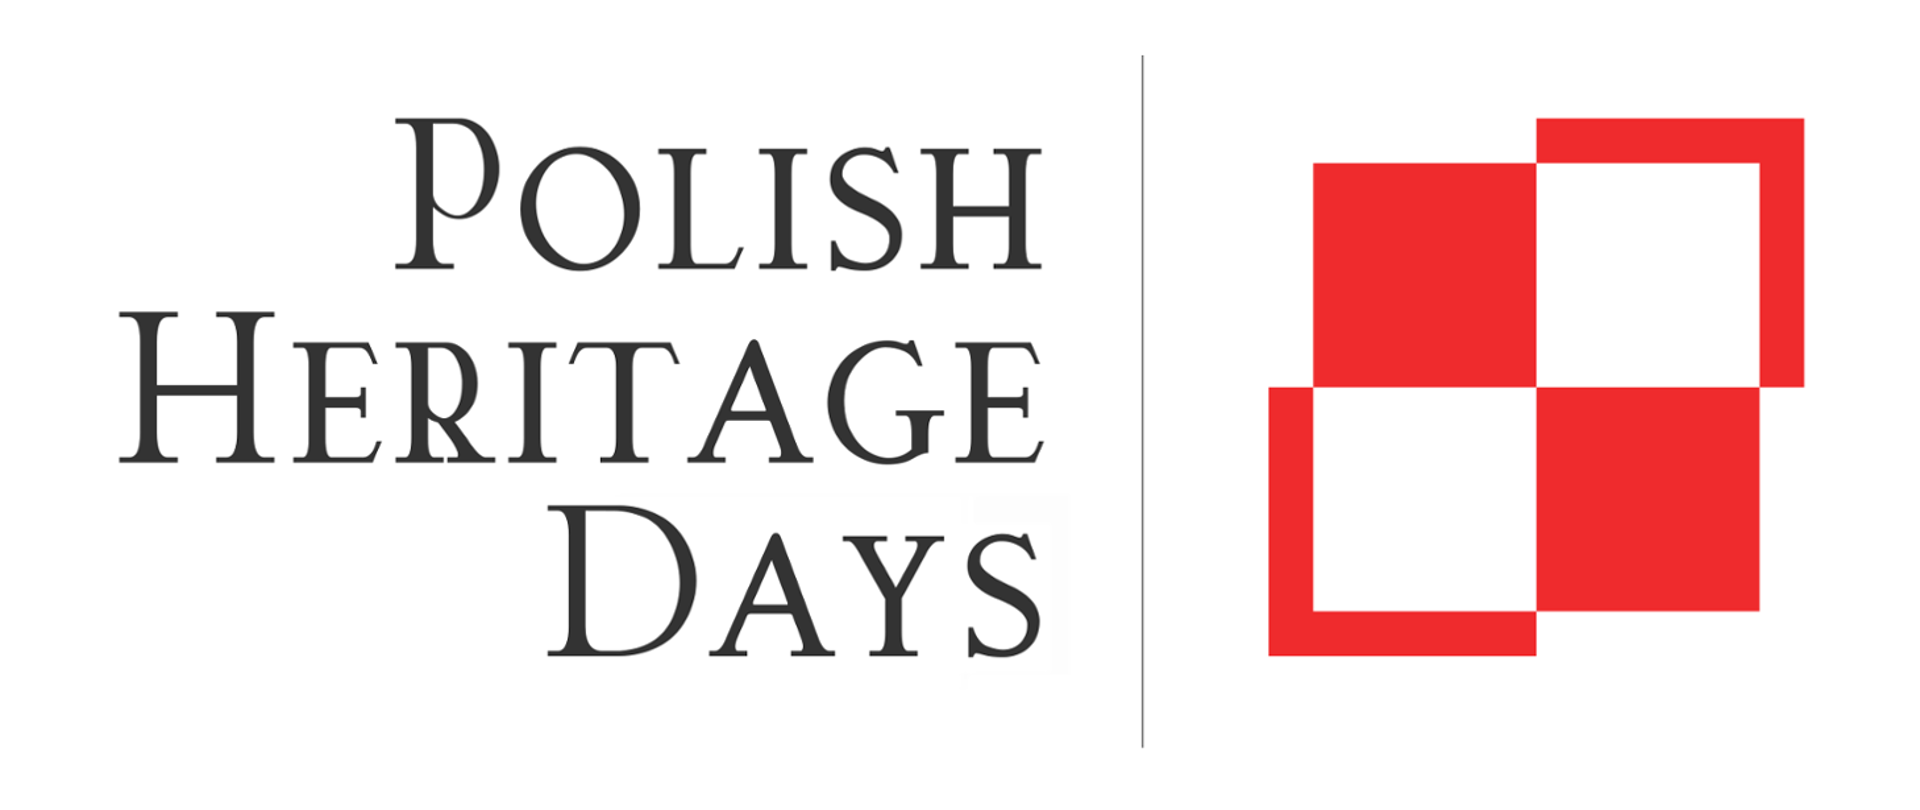 Dni Dziedzictwa Polskiego